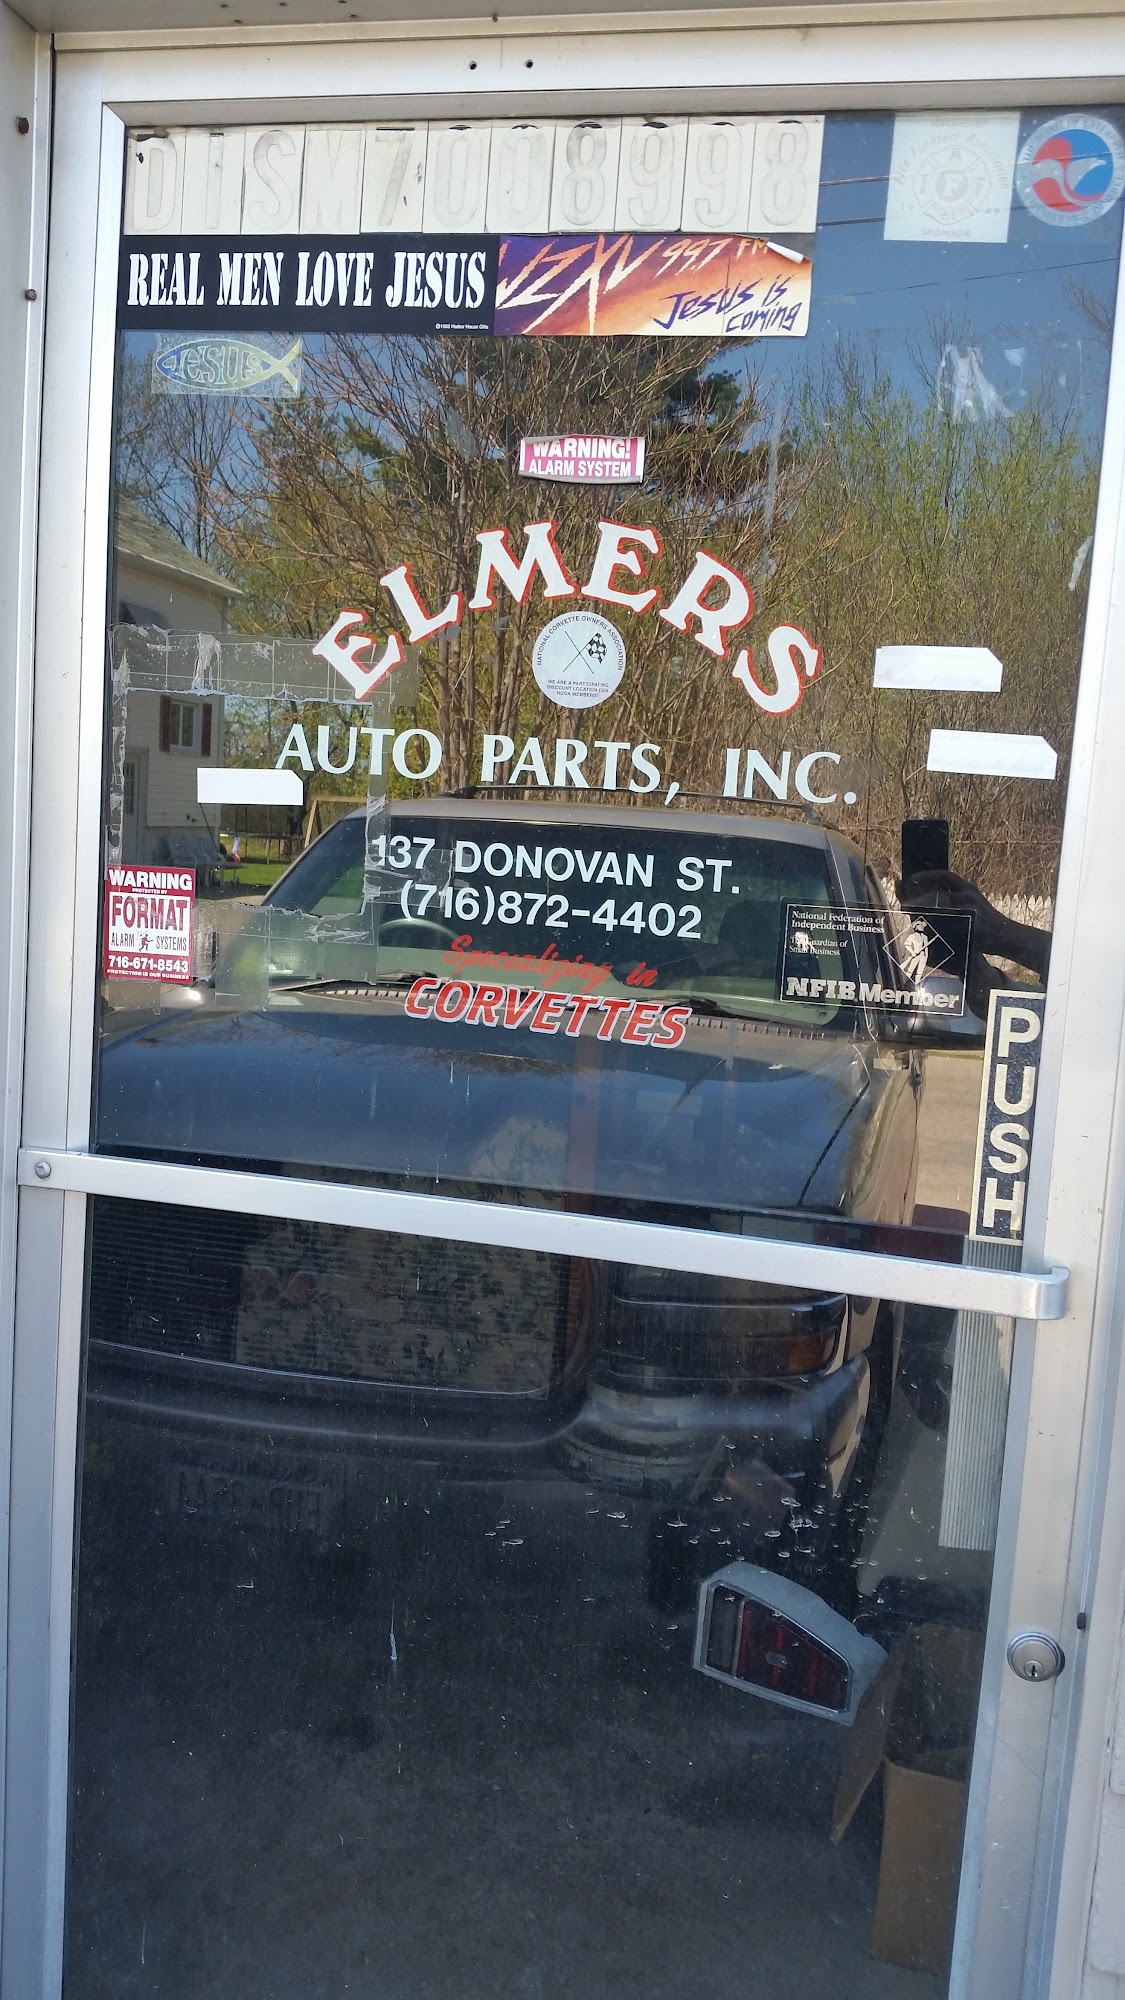 Elmers Auto Parts, Inc.